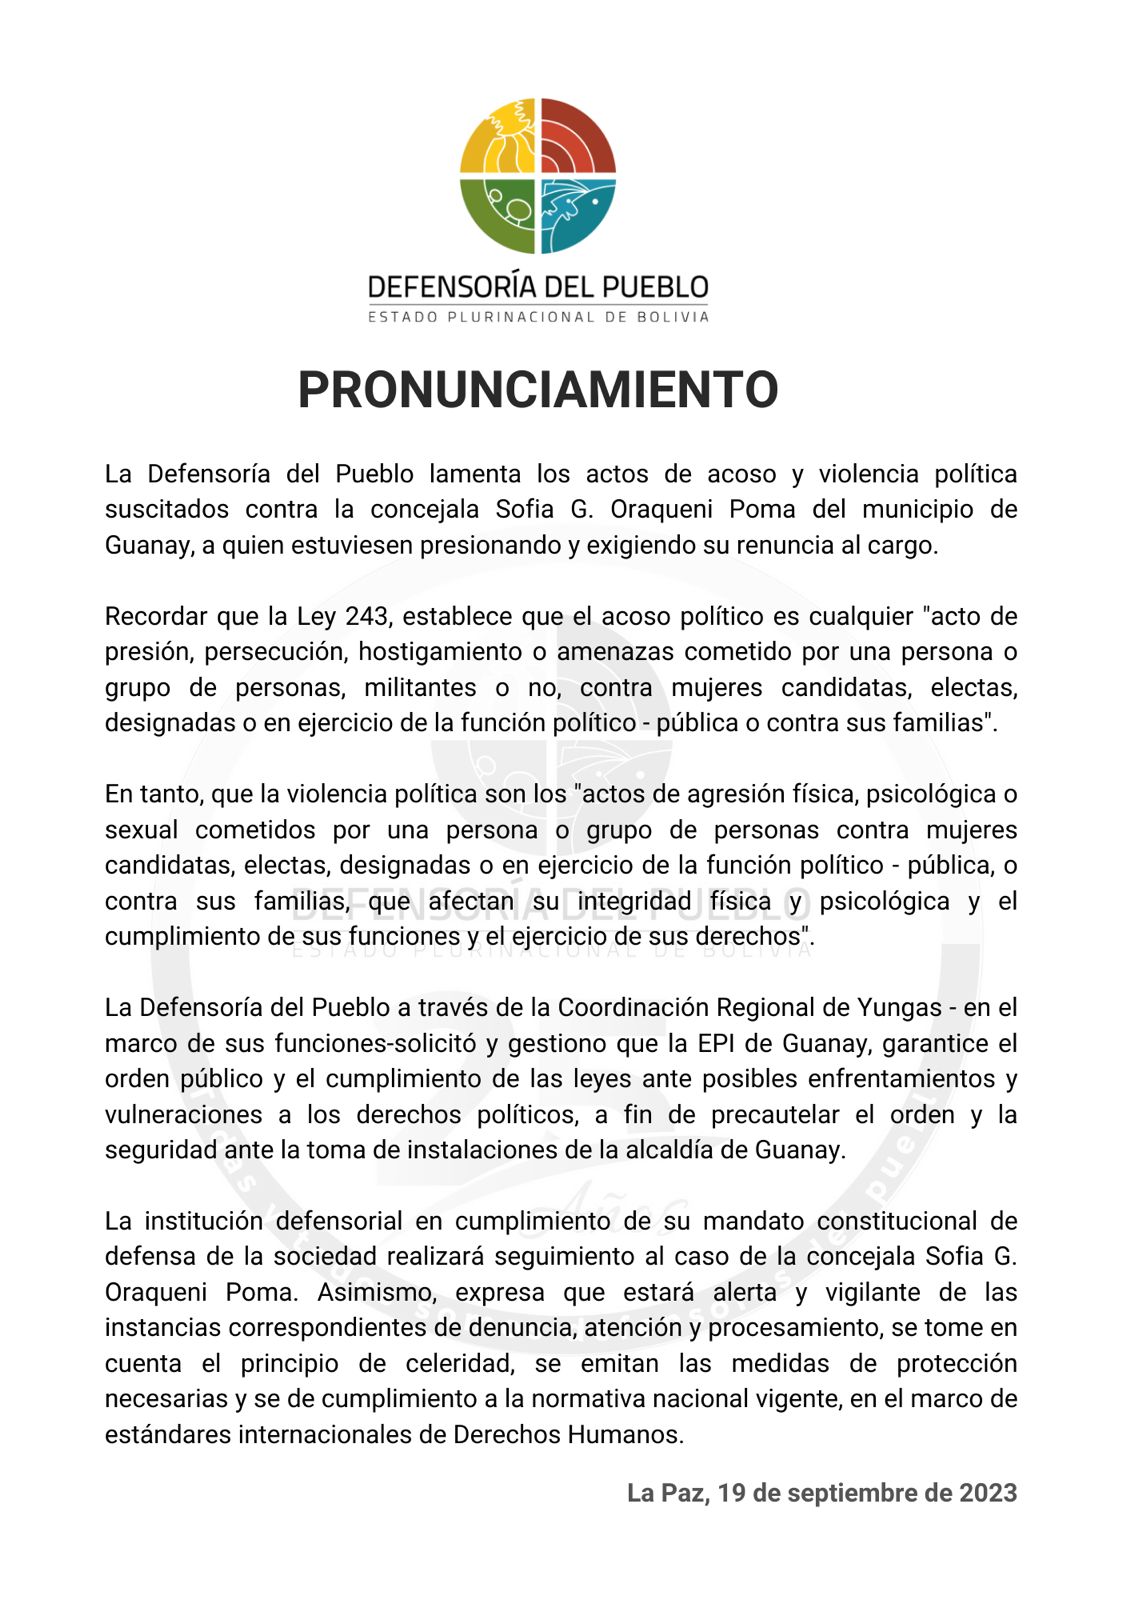 Pronunciamiento sobre actos de acoso y violencia política suscitados contra la concejala Sofia G. Oraqueni Poma del municipio de Guanay